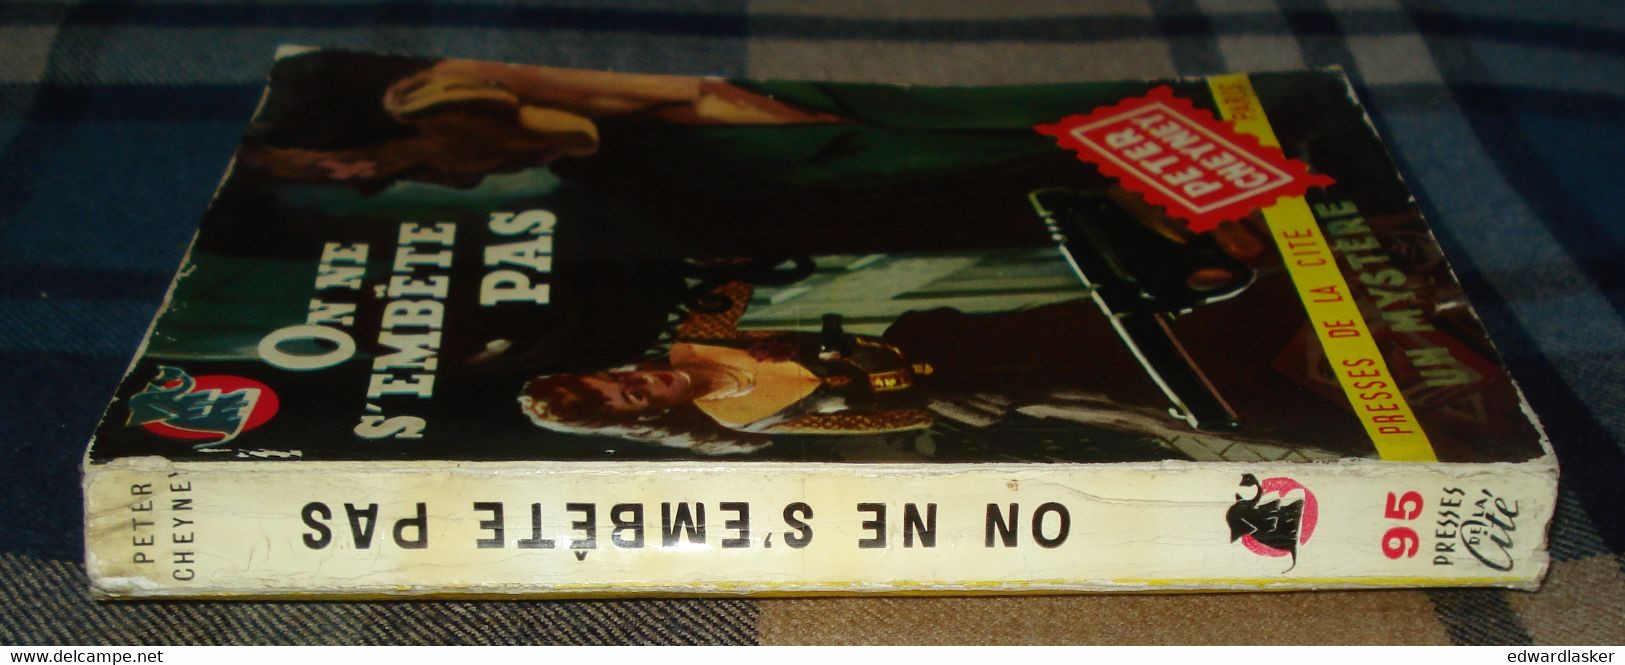 Un MYSTERE n°95 : On ne s'embête pas /Peter CHEYNEY - septembre 1954